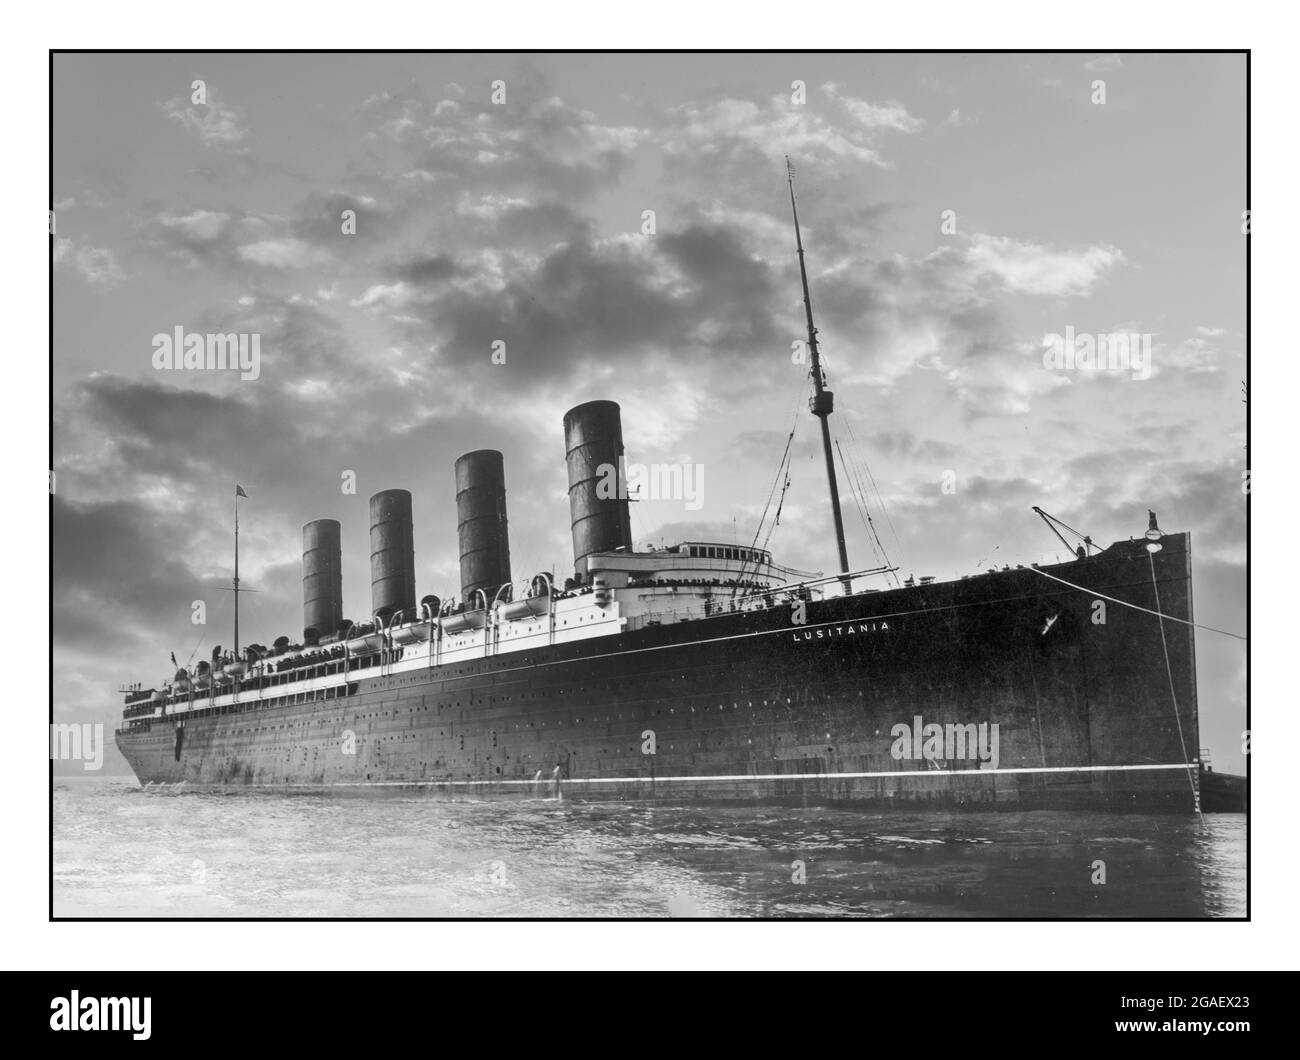 R.M.S. Lusitania entrant dans le port, peut-être à New York. RMS Lusitania était un paquebot britannique qui a été coulé le 7 mai 1915 par un U-boat allemand à 11 miles (18 km) au large de la côte sud de l'Irlande, tuant 1,198 passagers et l'équipage. Le naufrage s'est produit environ deux ans avant la déclaration de guerre des États-Unis contre l'Allemagne. Bien que le naufrage de Lusitania ait été un facteur majeur dans la construction d'un soutien à une guerre, la guerre n'a finalement été déclarée qu'après que le gouvernement allemand impérial ait repris l'utilisation de la guerre sous-marine sans restriction contre le transport maritime américain. Banque D'Images